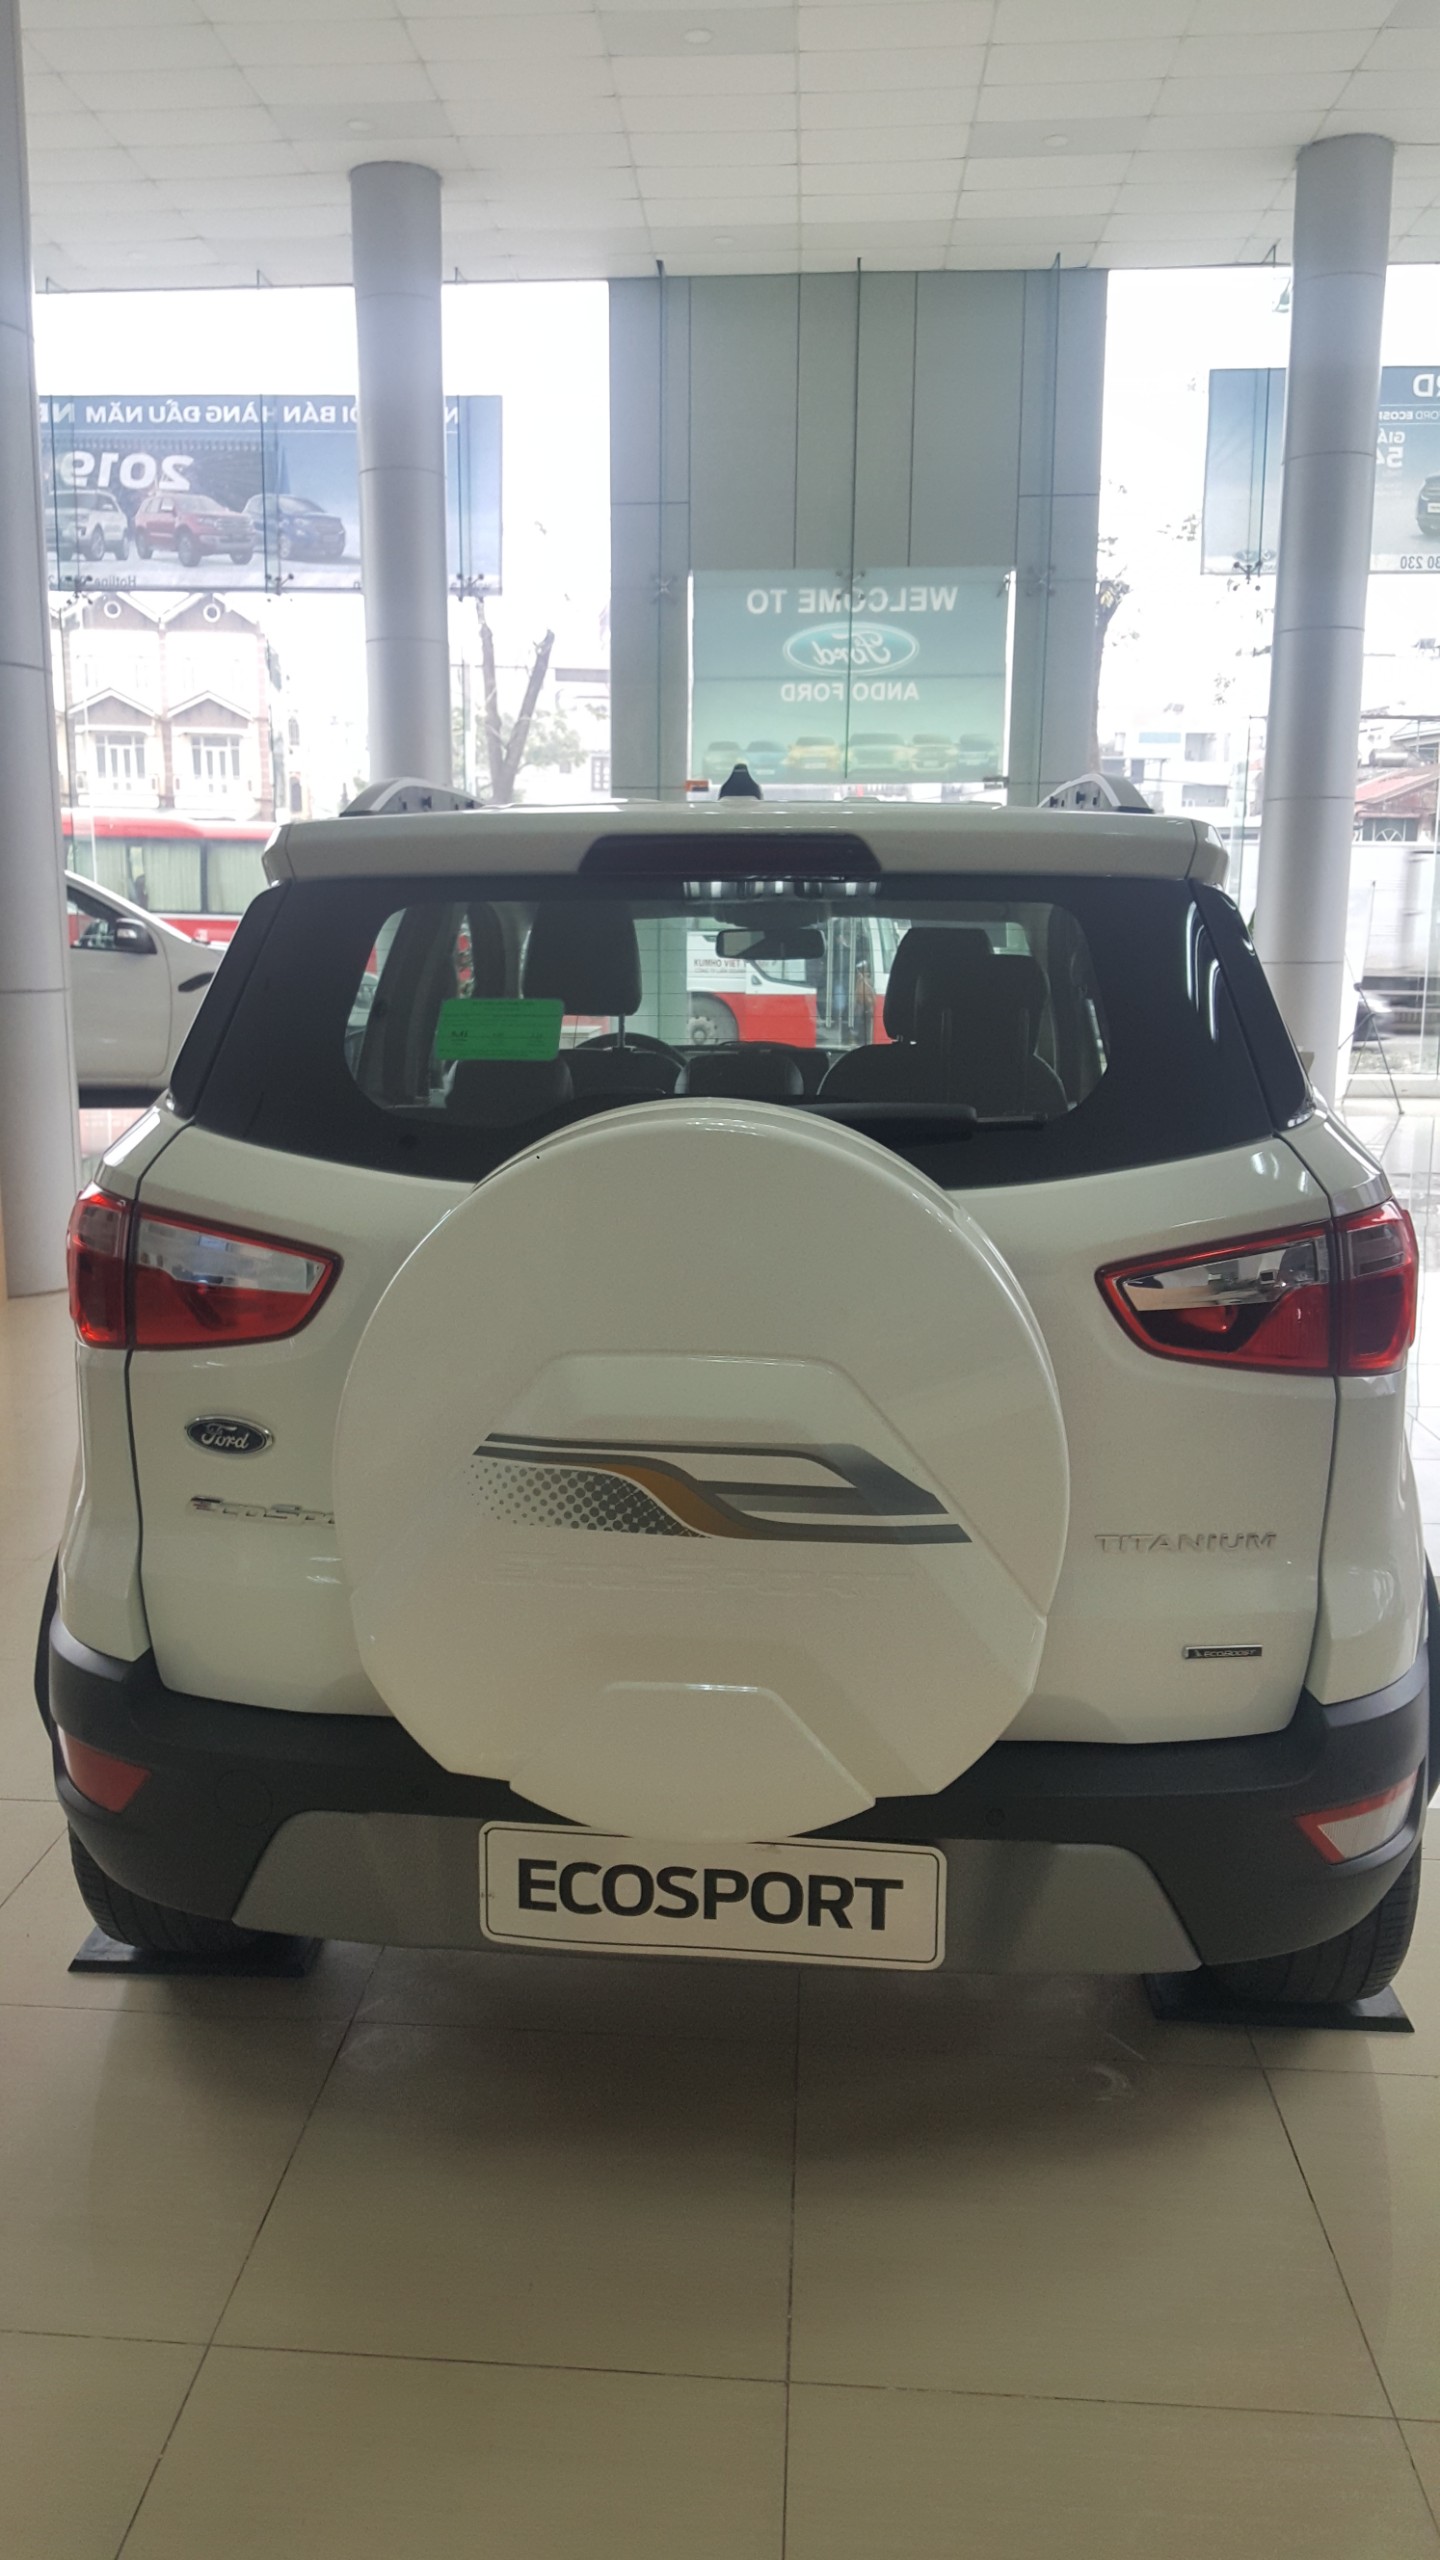 Ecosport giảm giá kịch sàn, ưu đãi tặng nhiều phụ kiện-4